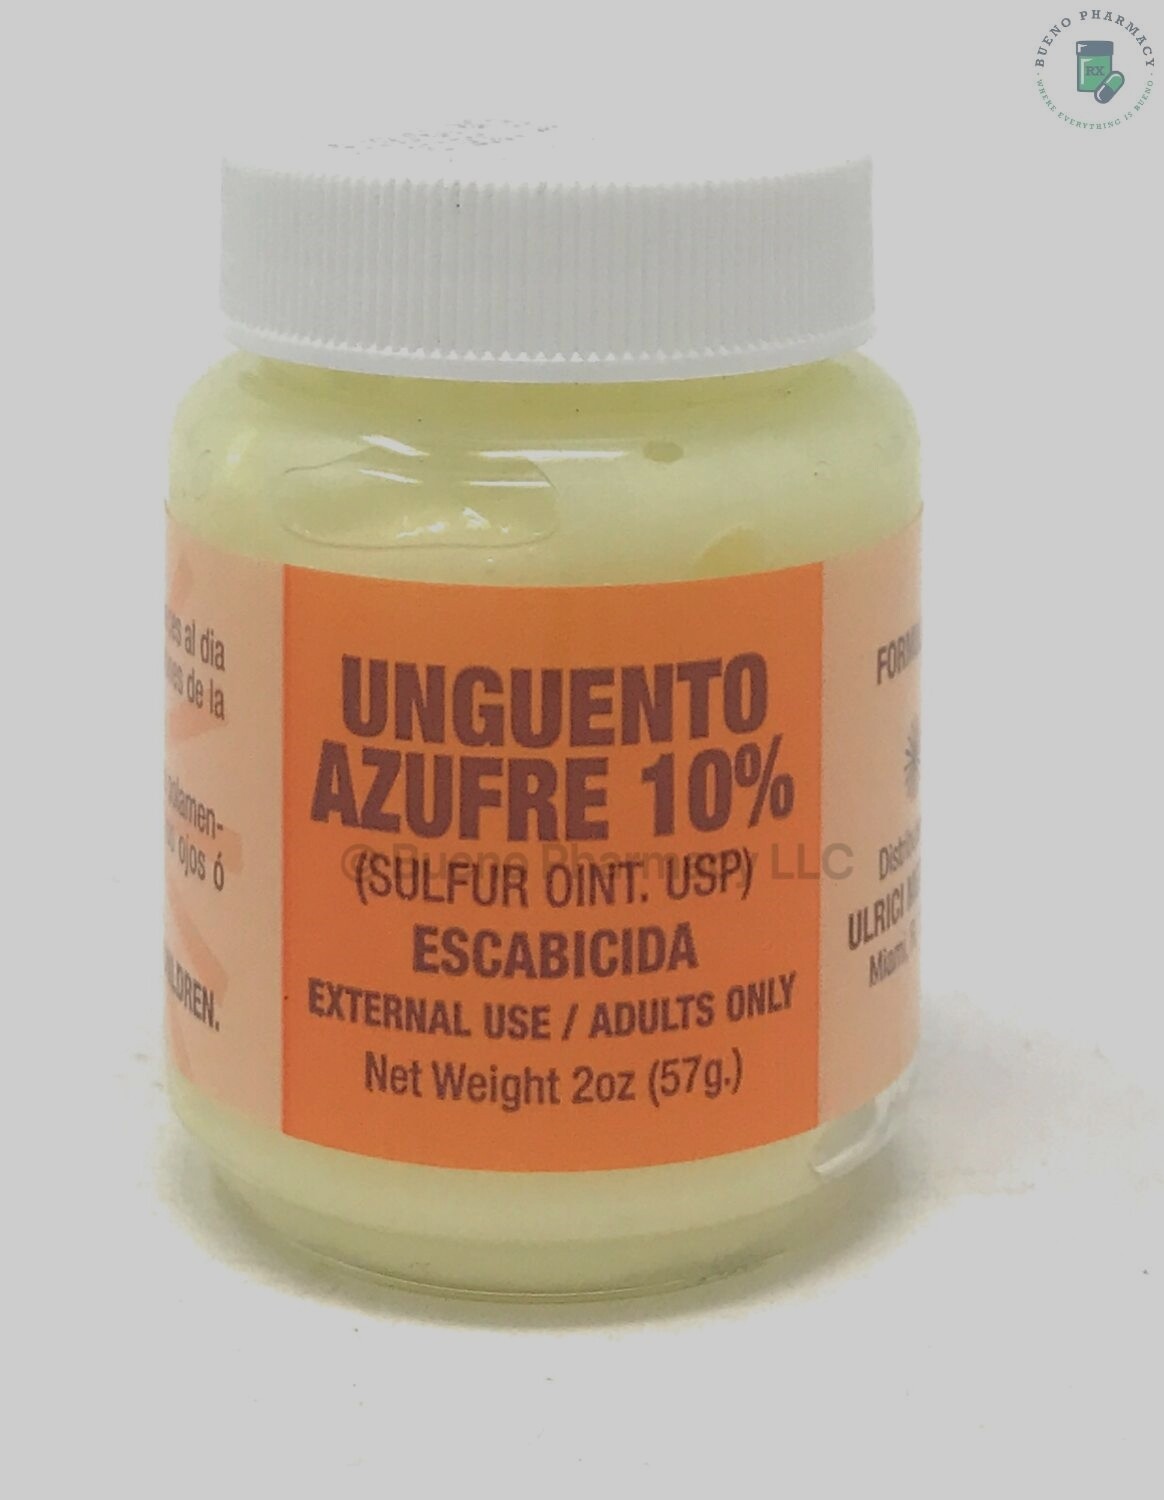 Unguento Azufre 10% | Sulfur Ointment 10% 2OZ